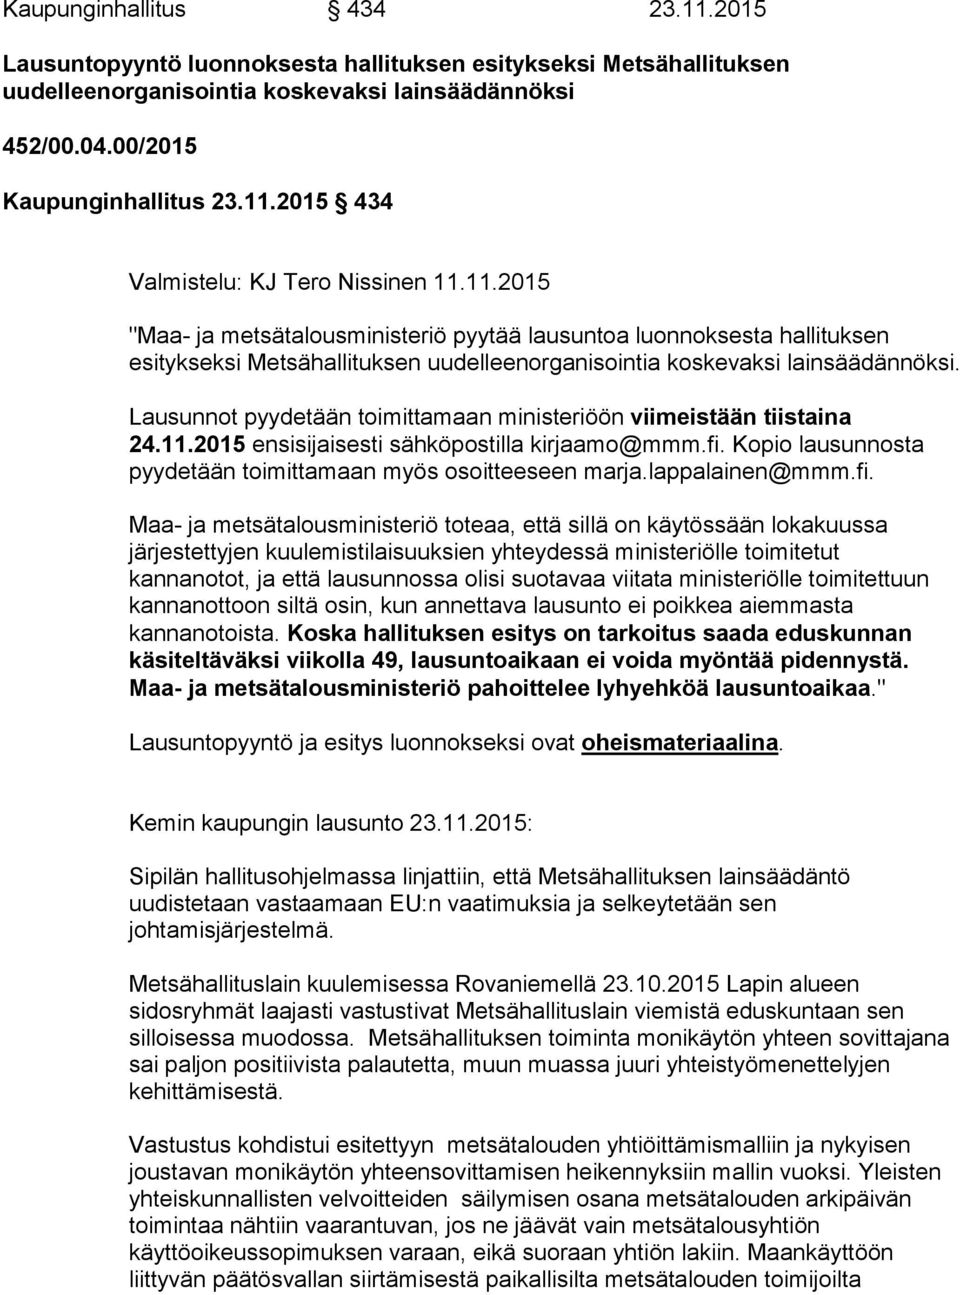 Lausunnot pyydetään toimittamaan ministeriöön viimeistään tiistaina 24.11.2015 ensisijaisesti sähköpostilla kirjaamo@mmm.fi. Kopio lausunnosta pyydetään toimittamaan myös osoitteeseen marja.